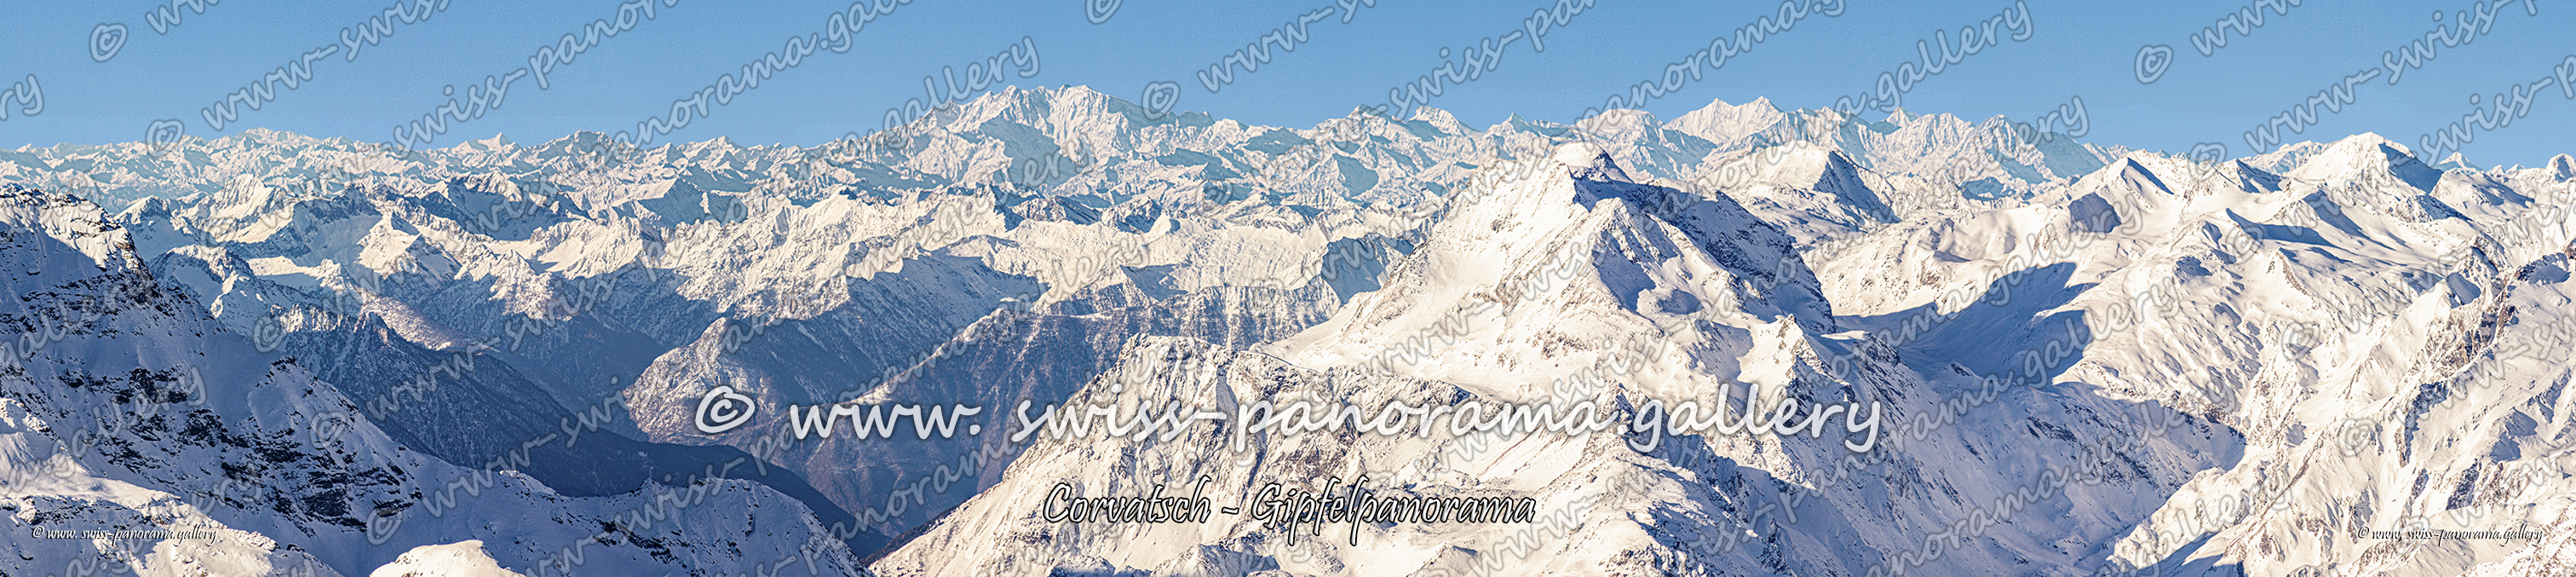 Panorama Gipfelpanorama von der Bergstation zu Gran Paradiso, Monte Rosa und den Walliser Viertausendern